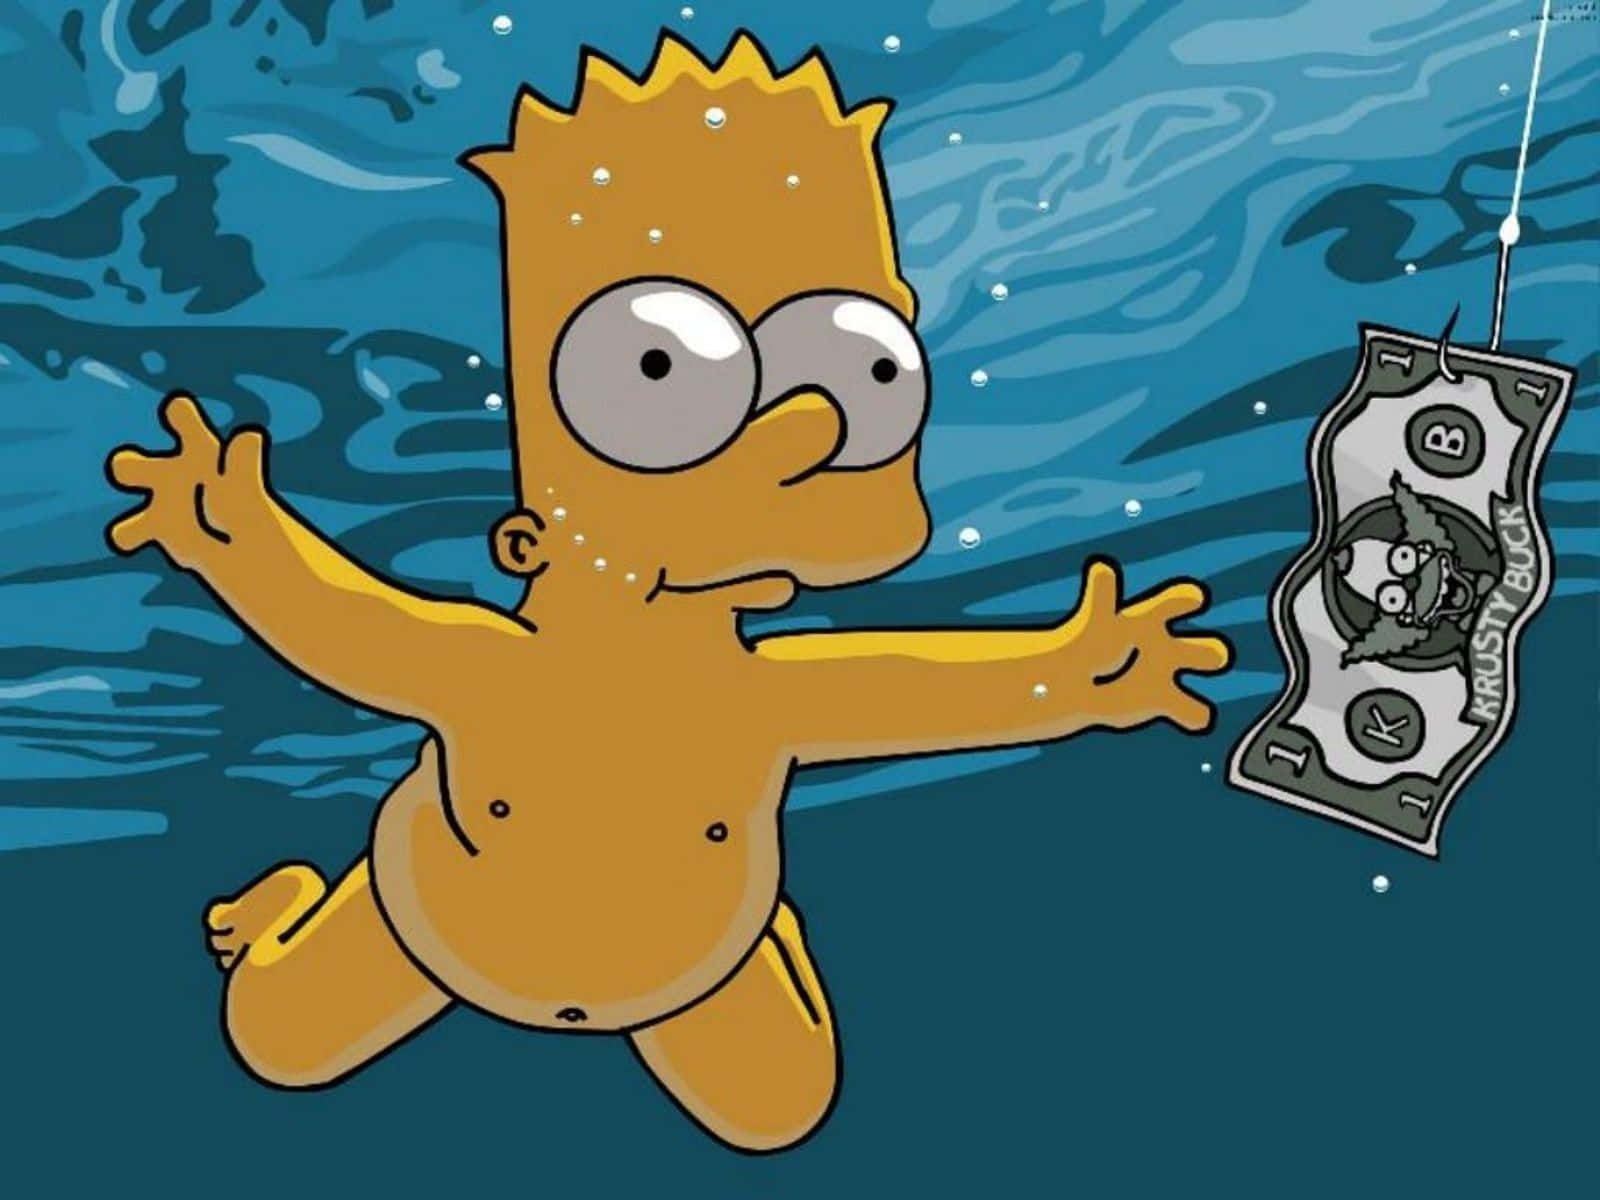 Psykedelisk leg med Bart Simpson! Wallpaper